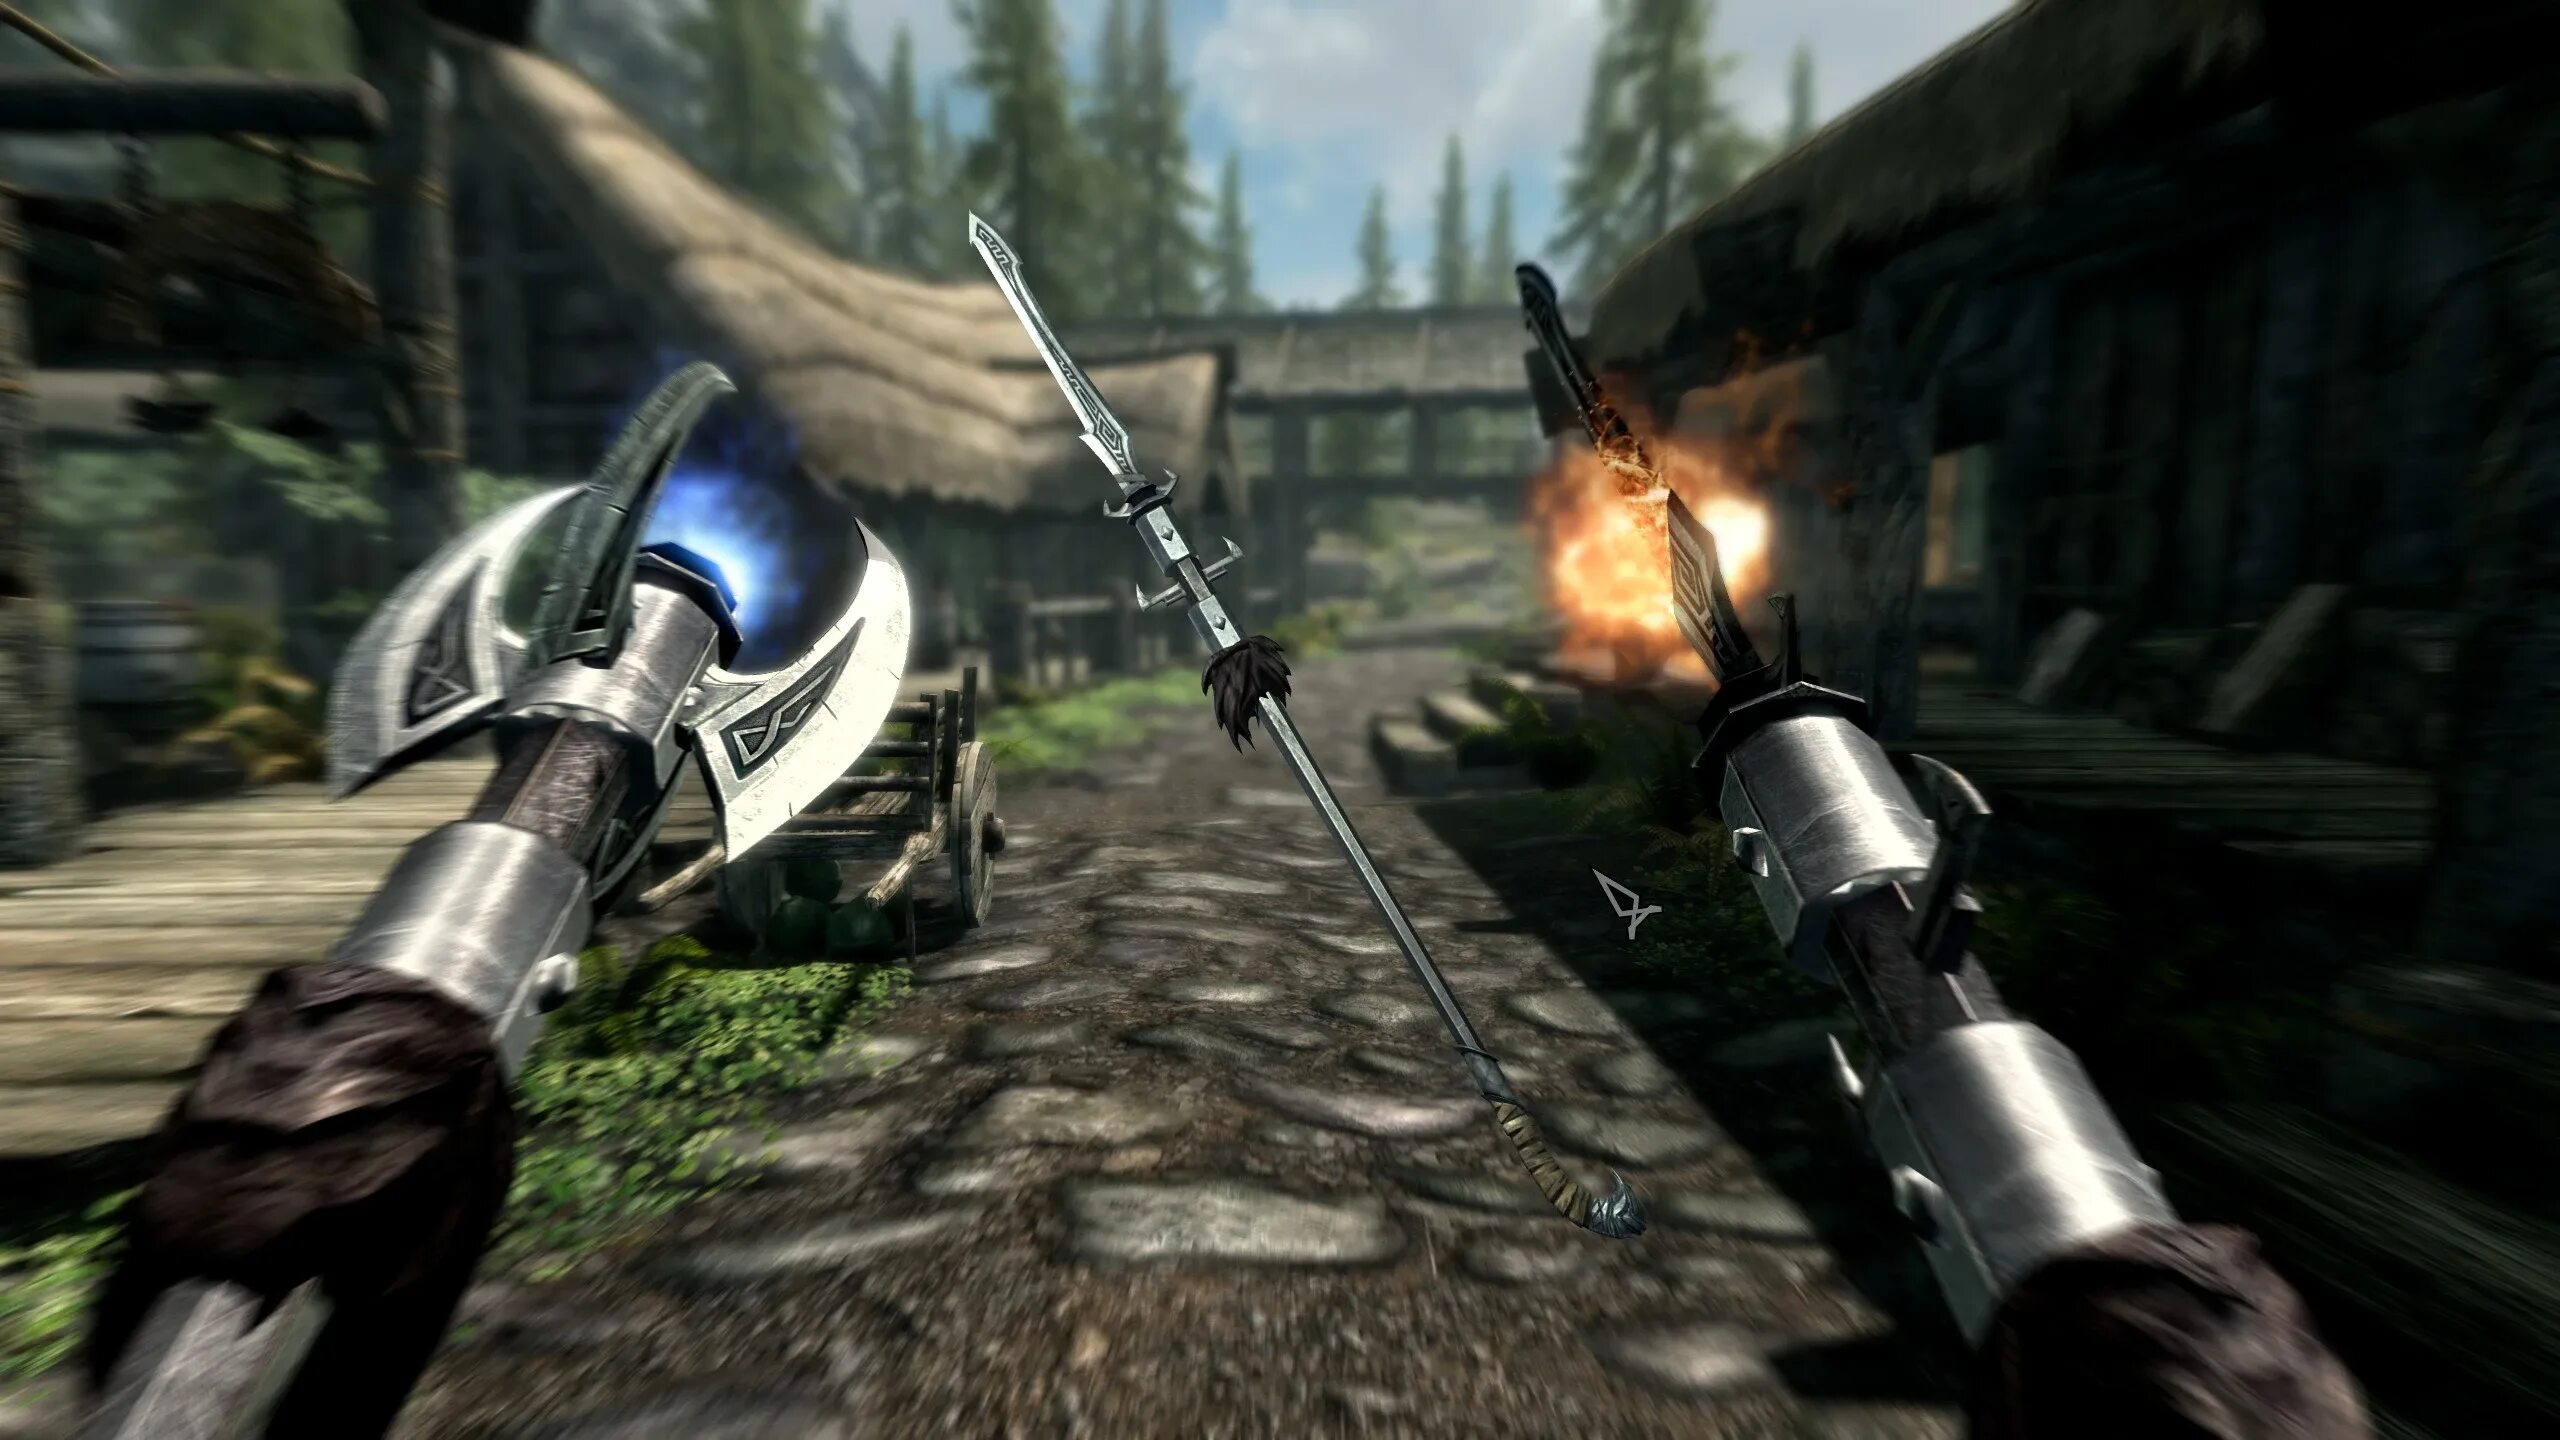 Скайрим оружие all Weapons. Skyrim Special Edition Mods оружие. Моды для Elder Scrolls 5: Skyrim оружие. Скайрим мод метательное оружие. Мод на сильное оружие